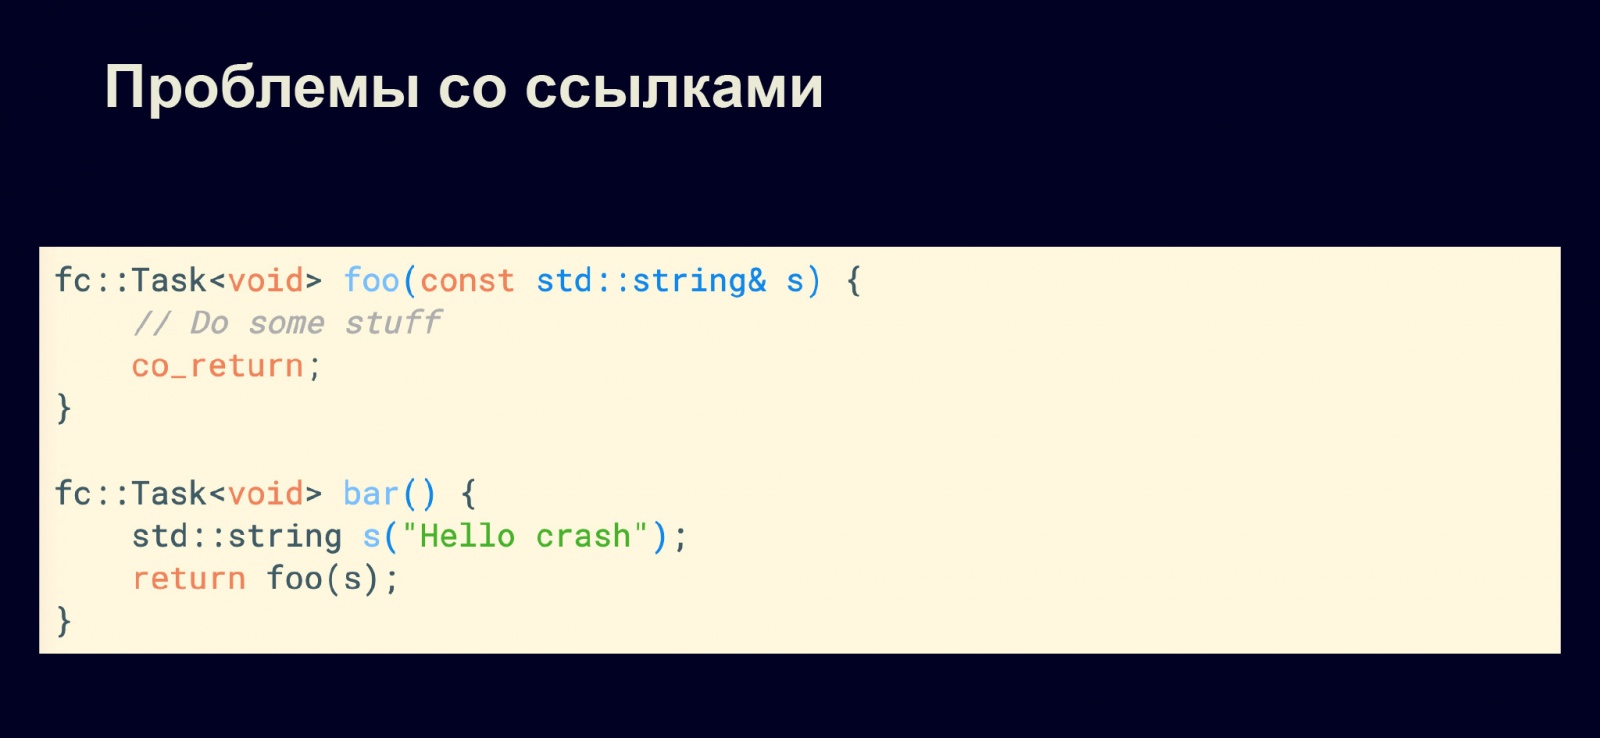 Асинхронность в С++20. Доклад в Яндексе - 7